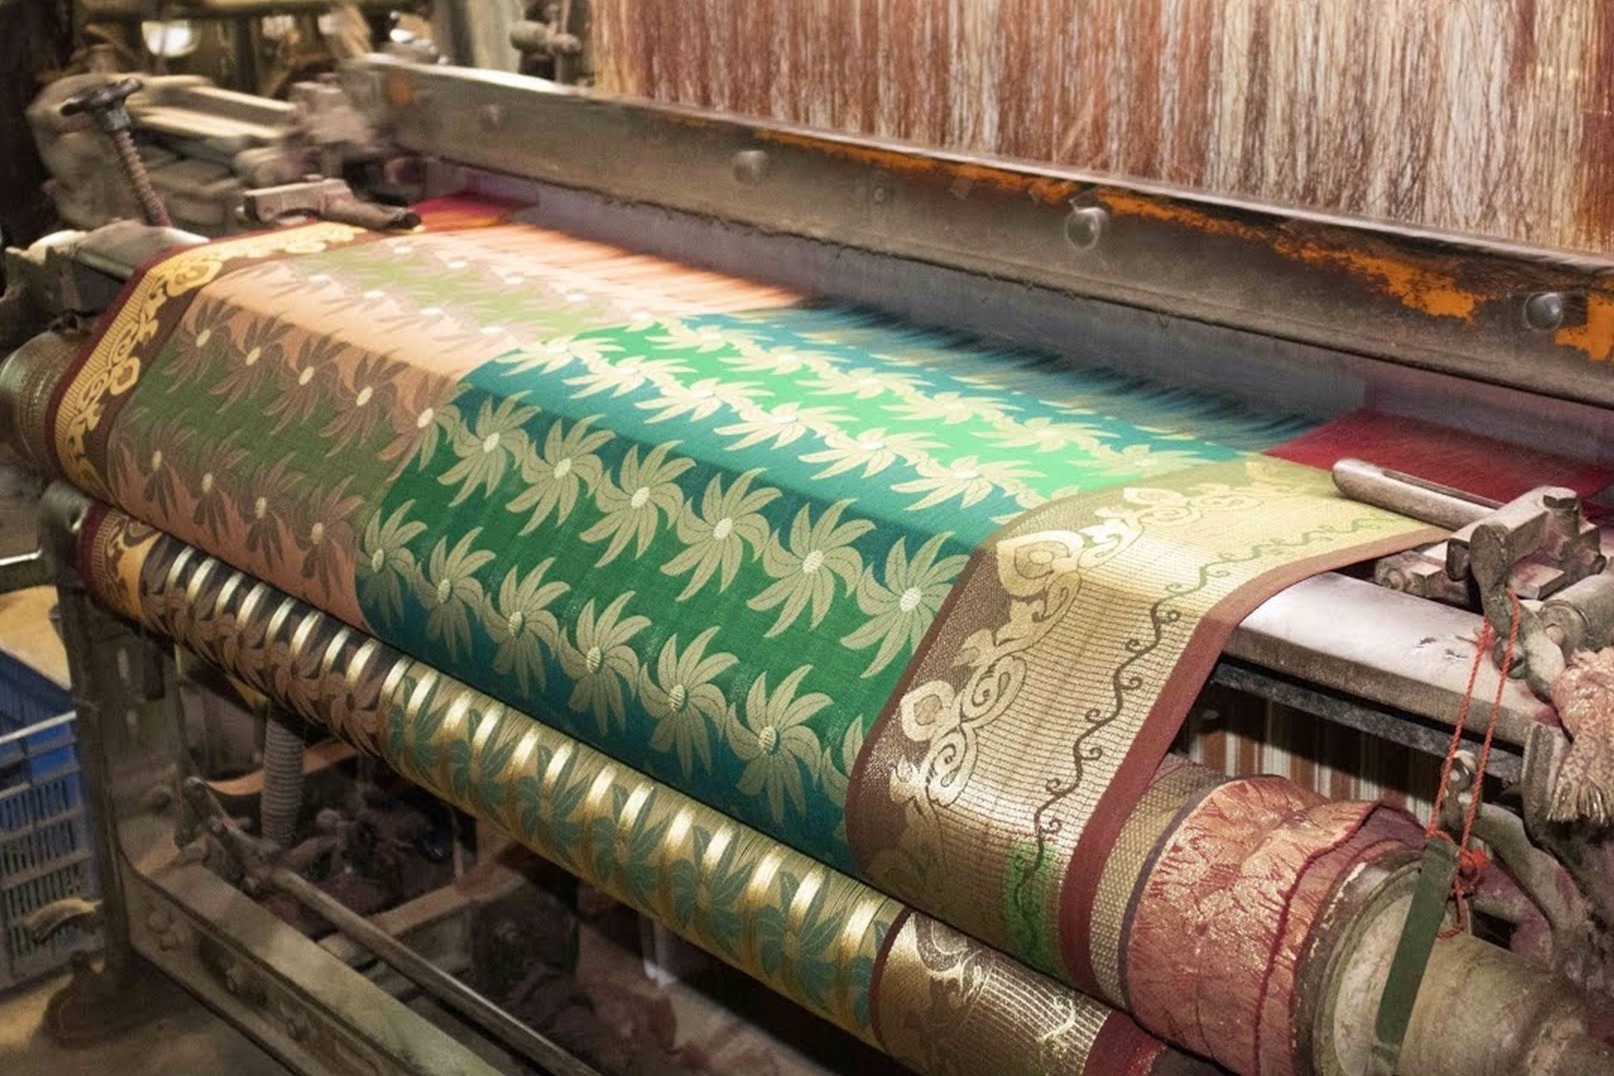 印度织布厂实拍伴随着哒哒哒的机器声花花绿绿的布就完成了